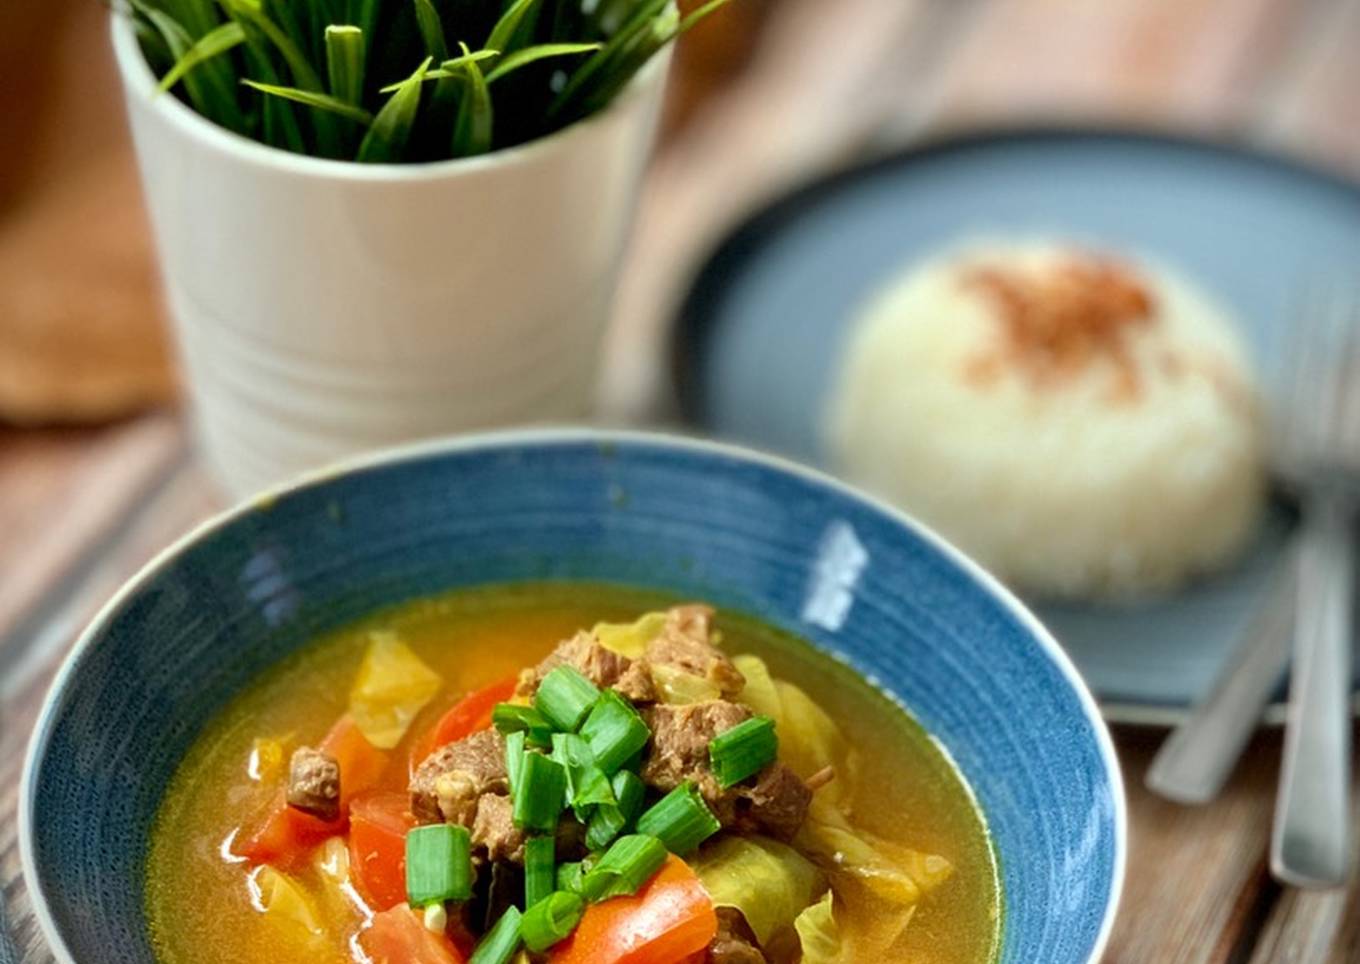 Shank Beef Soup – Tongseng Sengkel Sapi